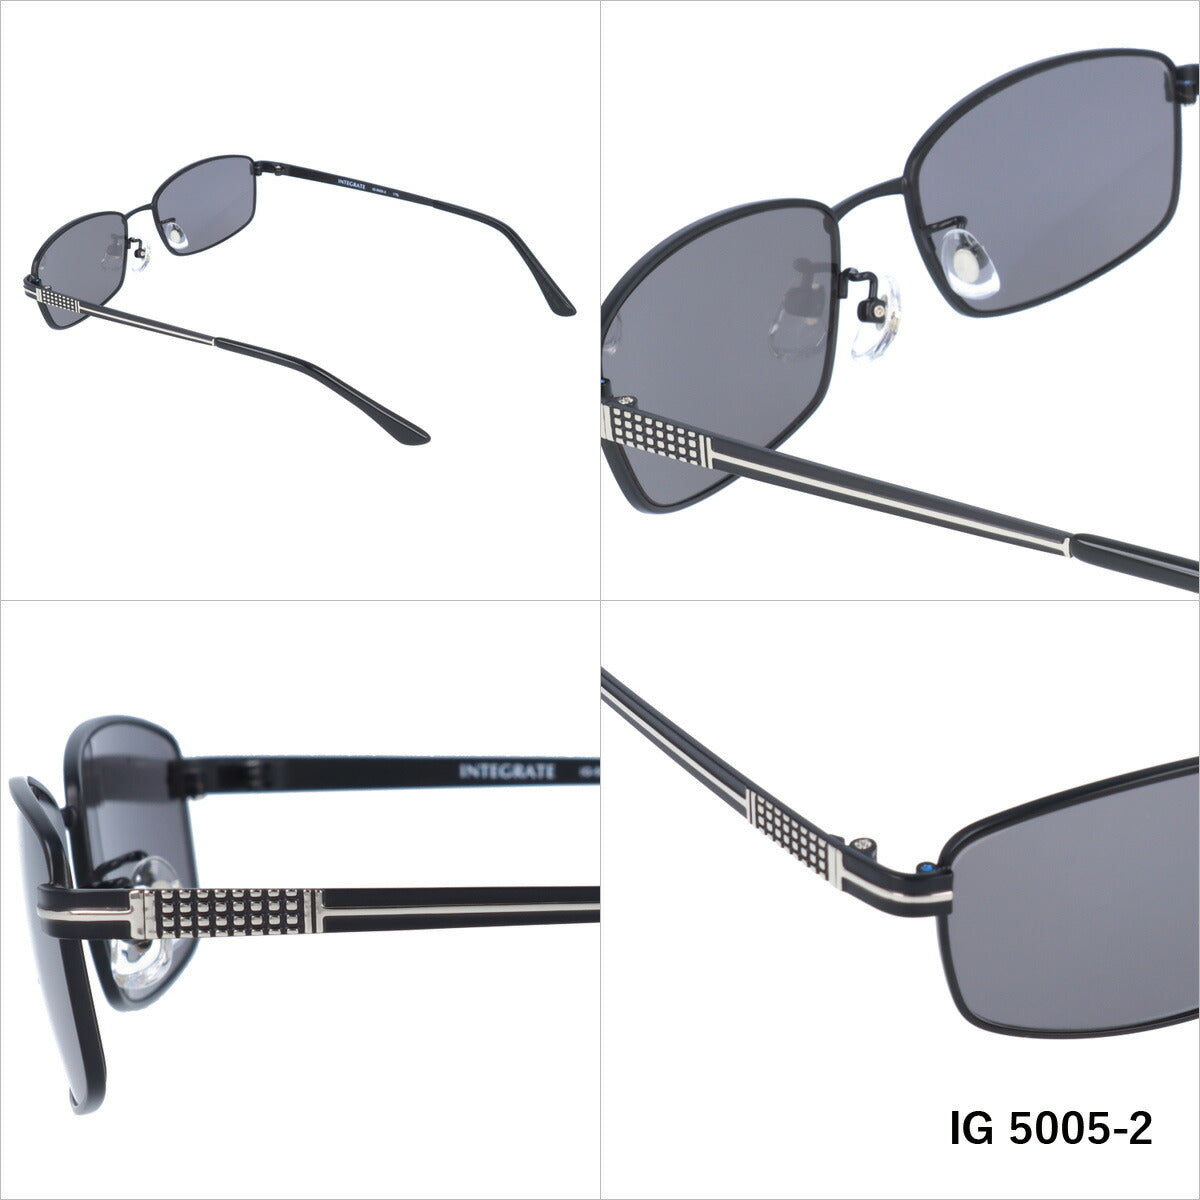 おしゃれ サングラス INTEGRATE インテグレート IG 5005 全3色 58サイズ アジアンフィット スクエア型 メンズ レディース UVカット 紫外線 対策 ブランド 眼鏡 メガネ アイウェア 人気 おすすめ ラッピング無料